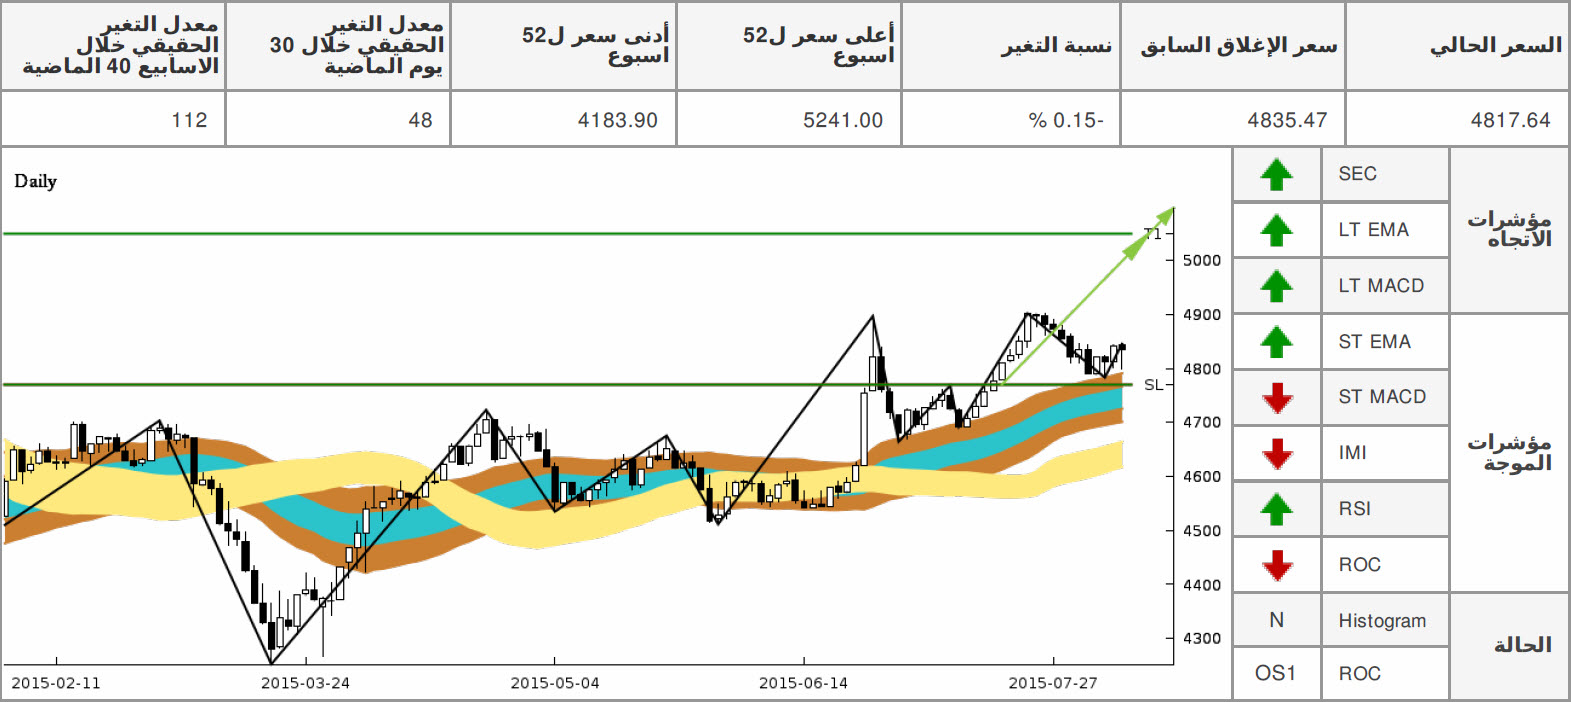 الرسم البياني لمؤشر أبوظبي المالي